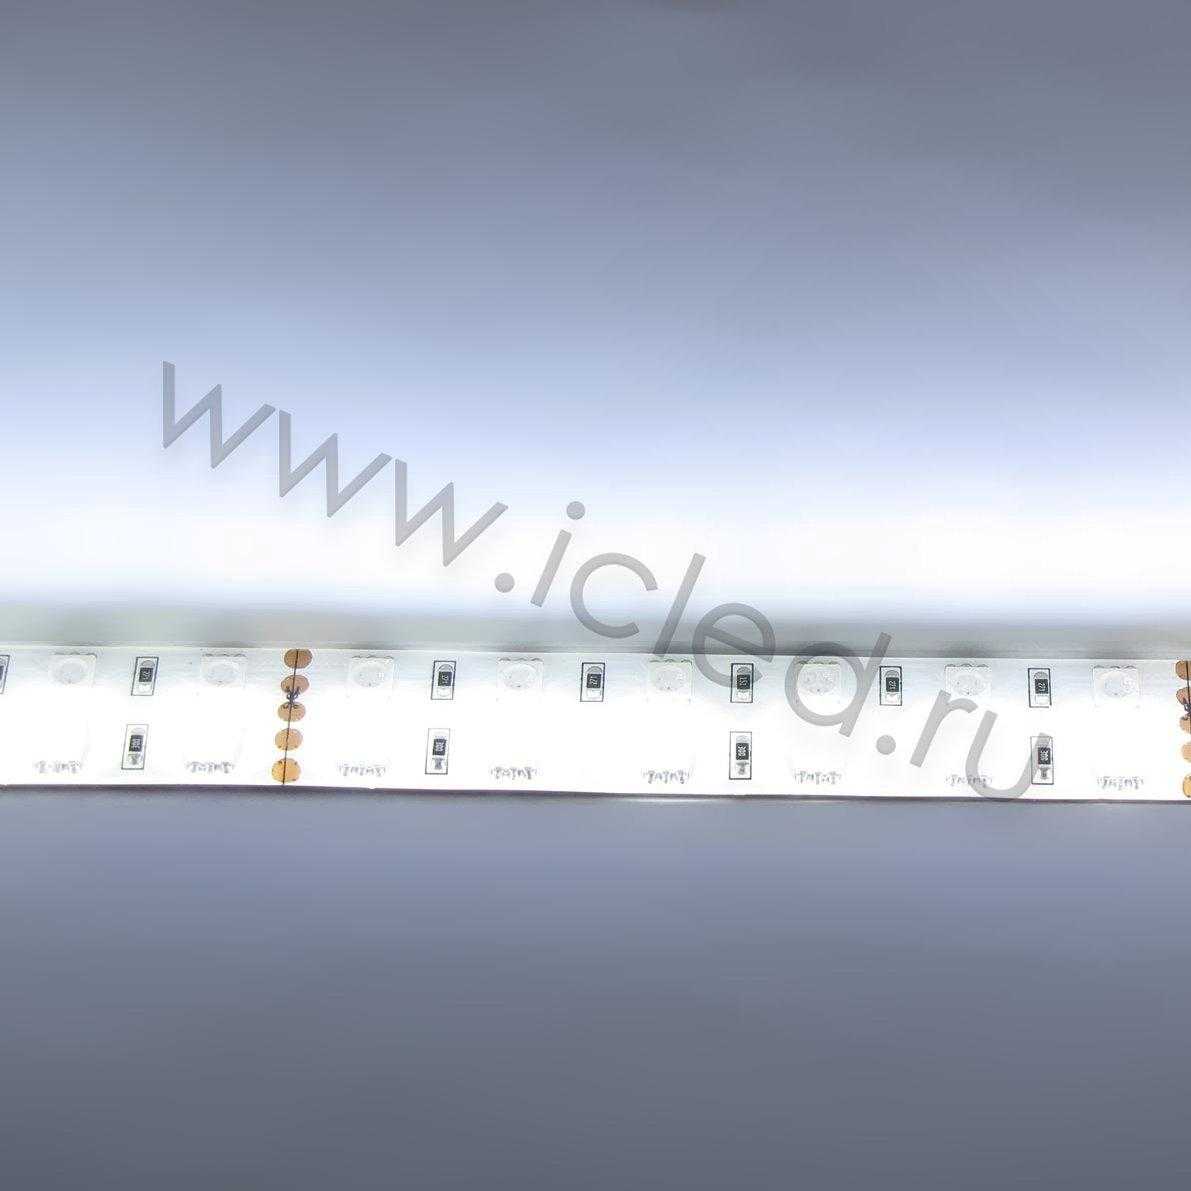 Влагозащищенные светодиодные ленты Светодиодная лента Standart PRO class, 5050, 120 led/m, RGBW, 24V, IP65 Icled